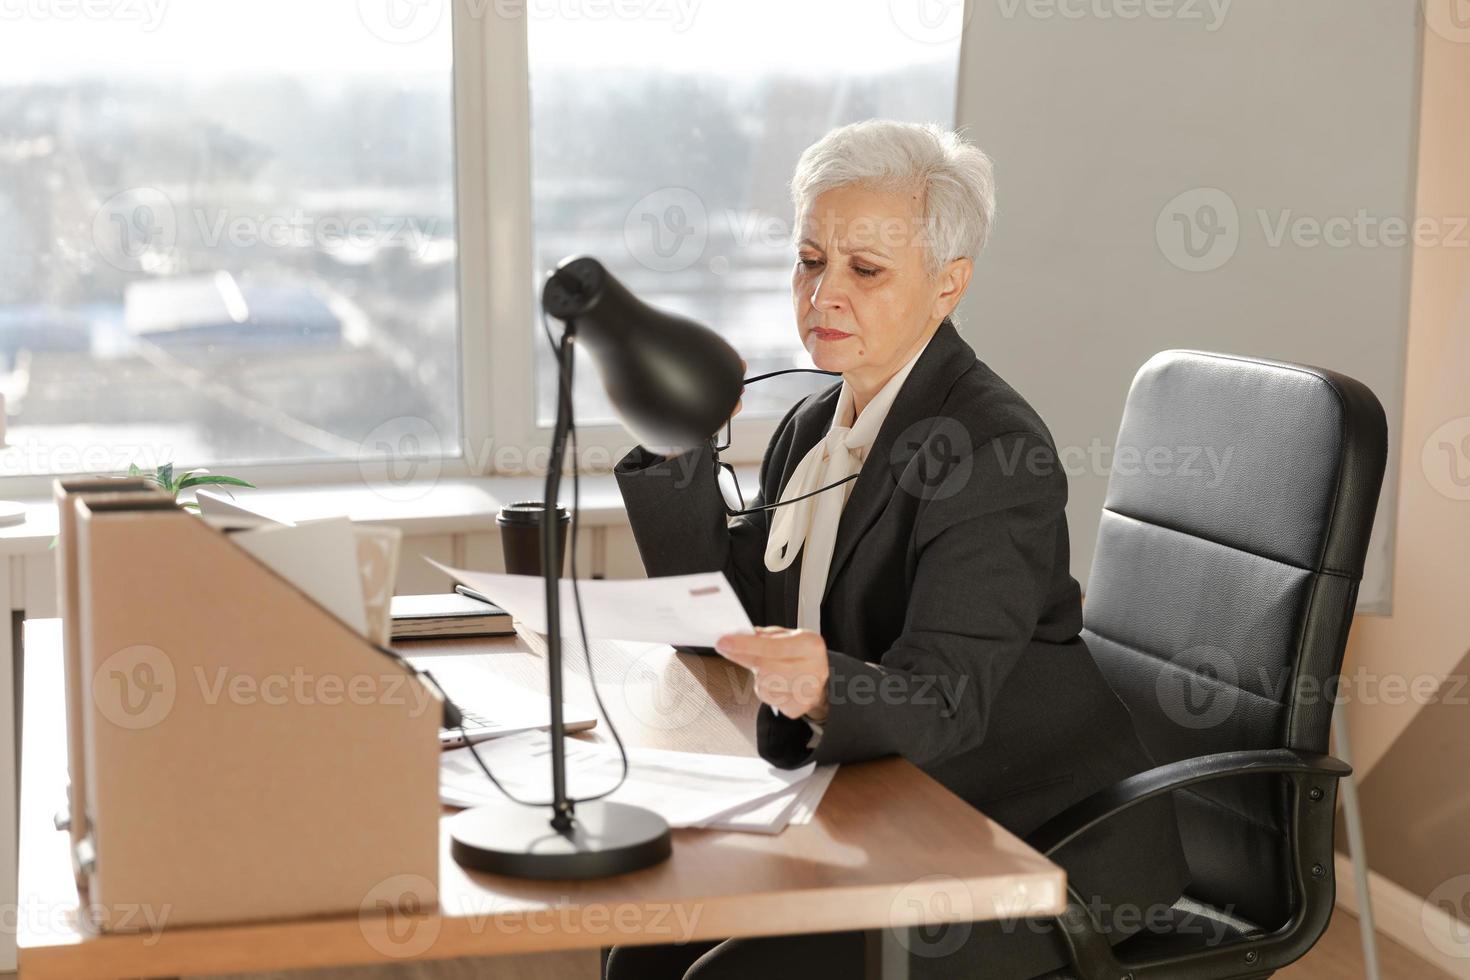 självsäker eleganta europeisk mitten åldrig senior kvinna läsning finansiell Rapportera dokumentation statistik. eleganta äldre mogna 60s grå håriga lady affärskvinna i kontor. chef ledare lärare. foto